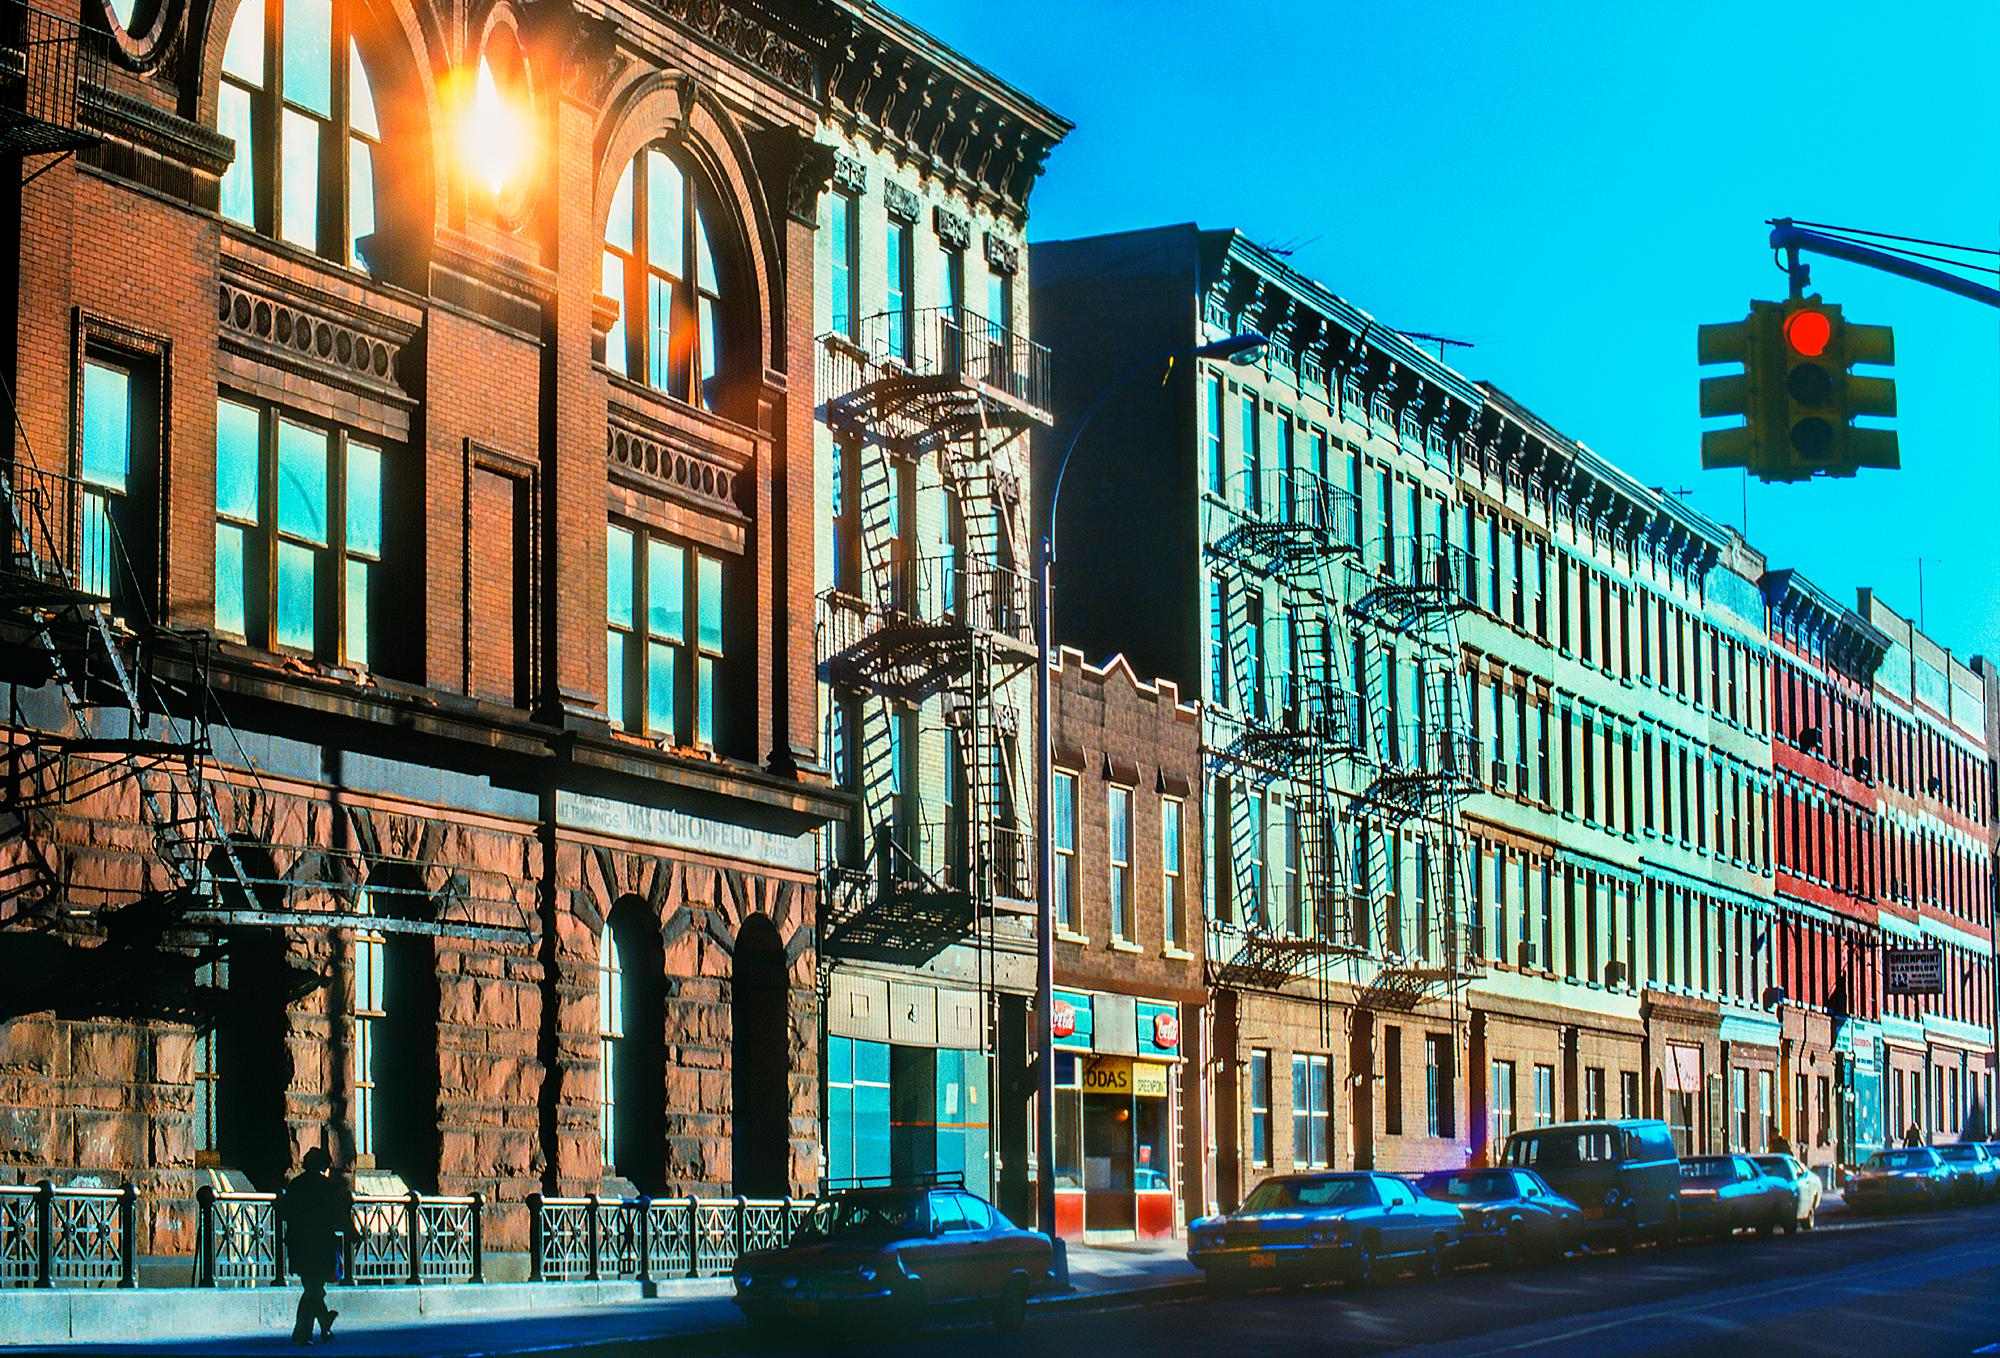 Maisons de la rue de Brooklyn avec magasin de bonbons et bâtiments du XIXe siècle